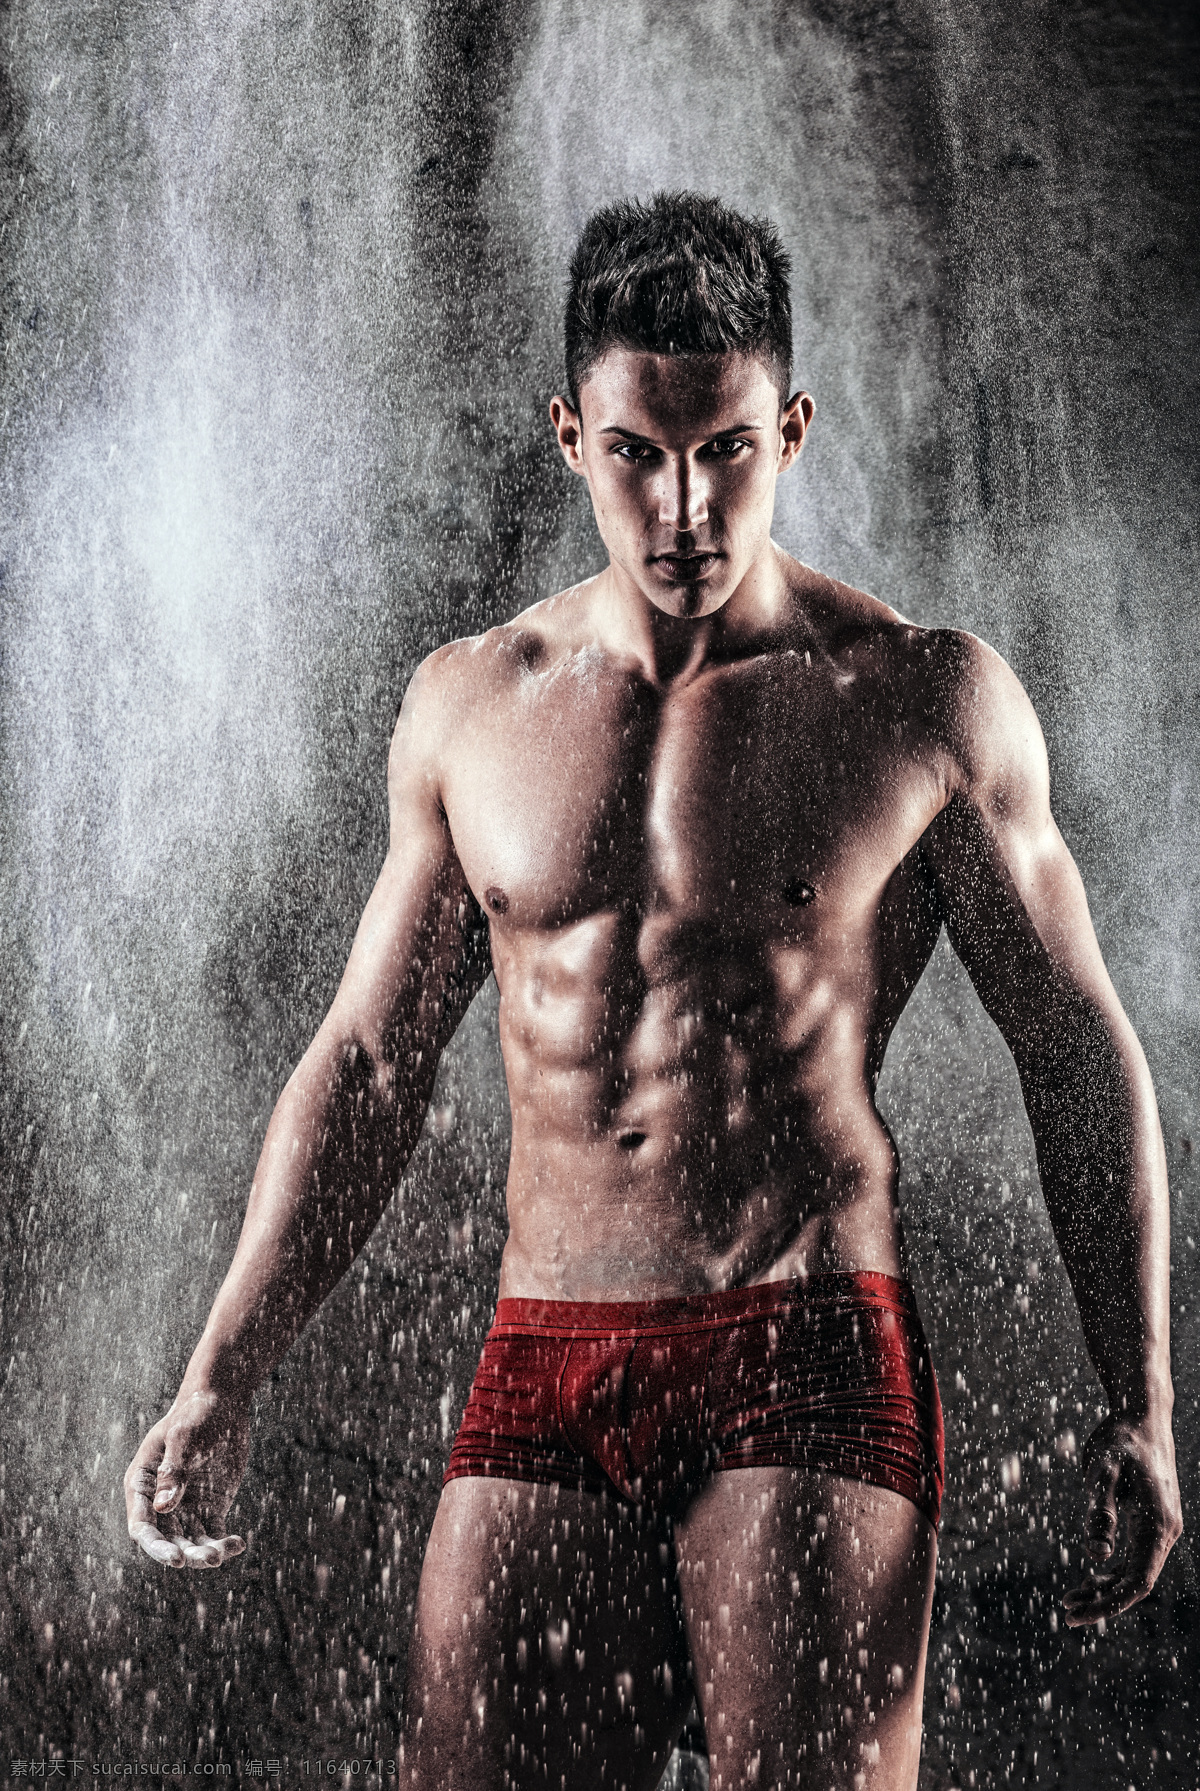 雨 中 肌肉 帅哥 雨水 男人 健身 运动 生活人物 人物图片